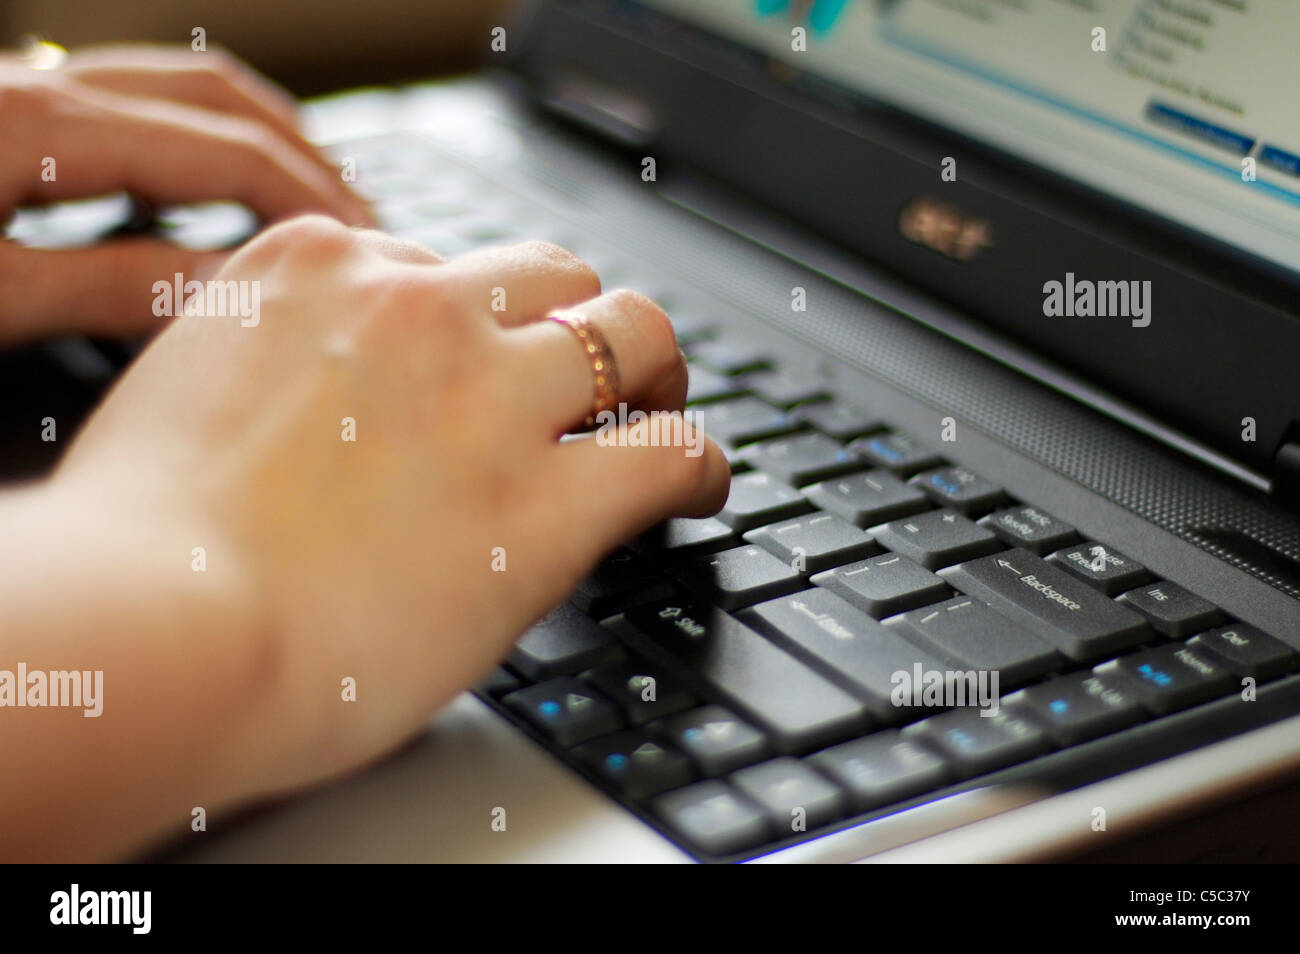 Femme de la saisie sur ordinateur portable avec bouton de retour arrière dans l'accent, sur l'anneau celtique doigt main droite. Banque D'Images